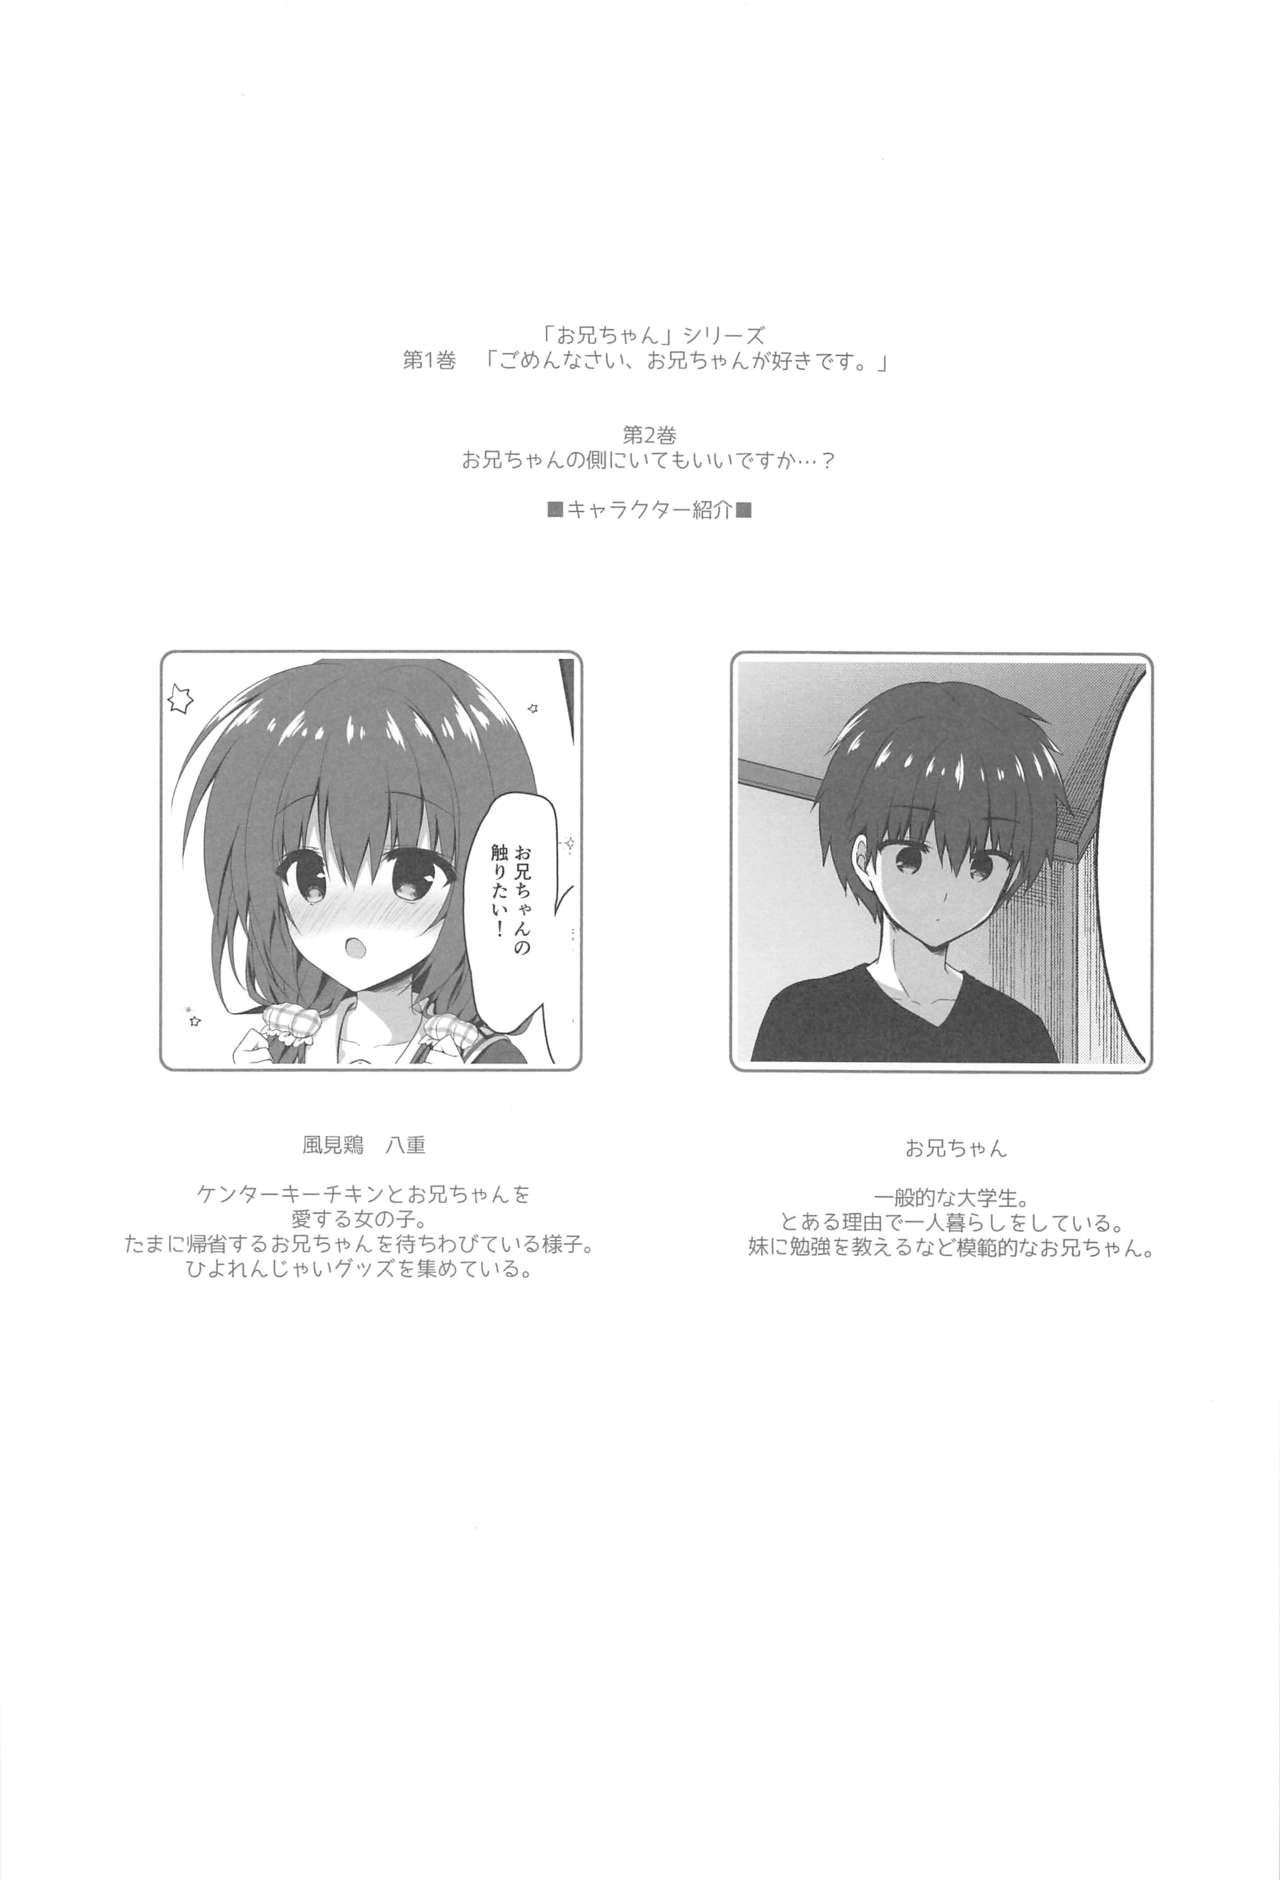 Shorts Onii-chan no Soba ni Ite mo Ii desu ka...? - Original Flogging - Page 3